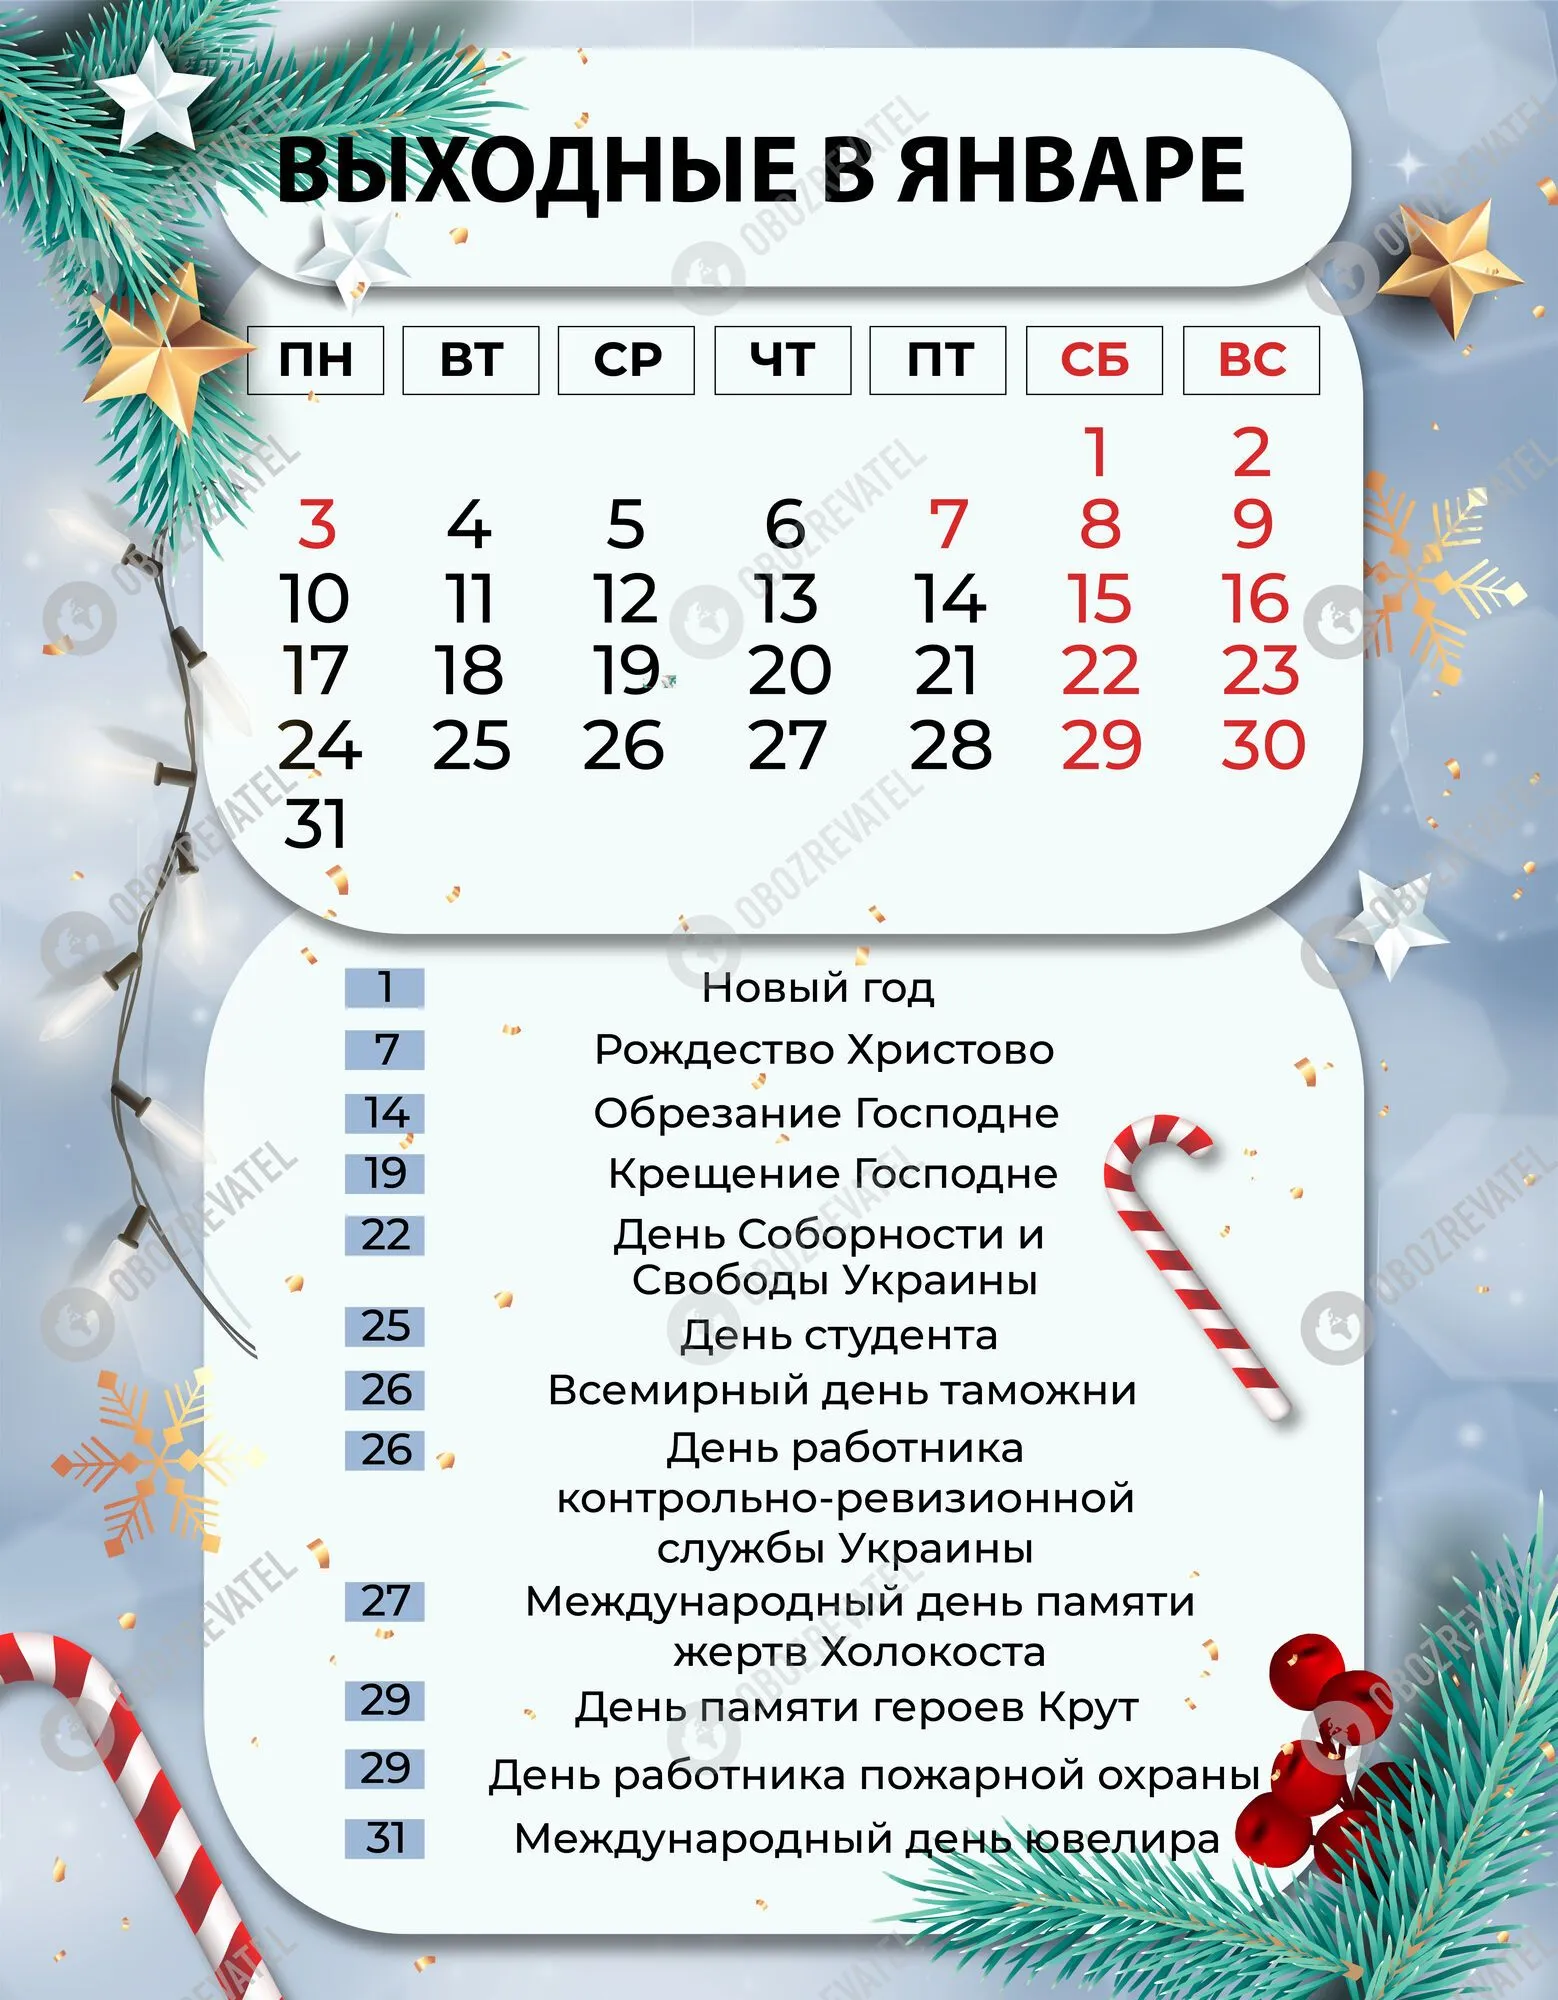 В январе 2022 года в Украине будет 12 официальных выходных